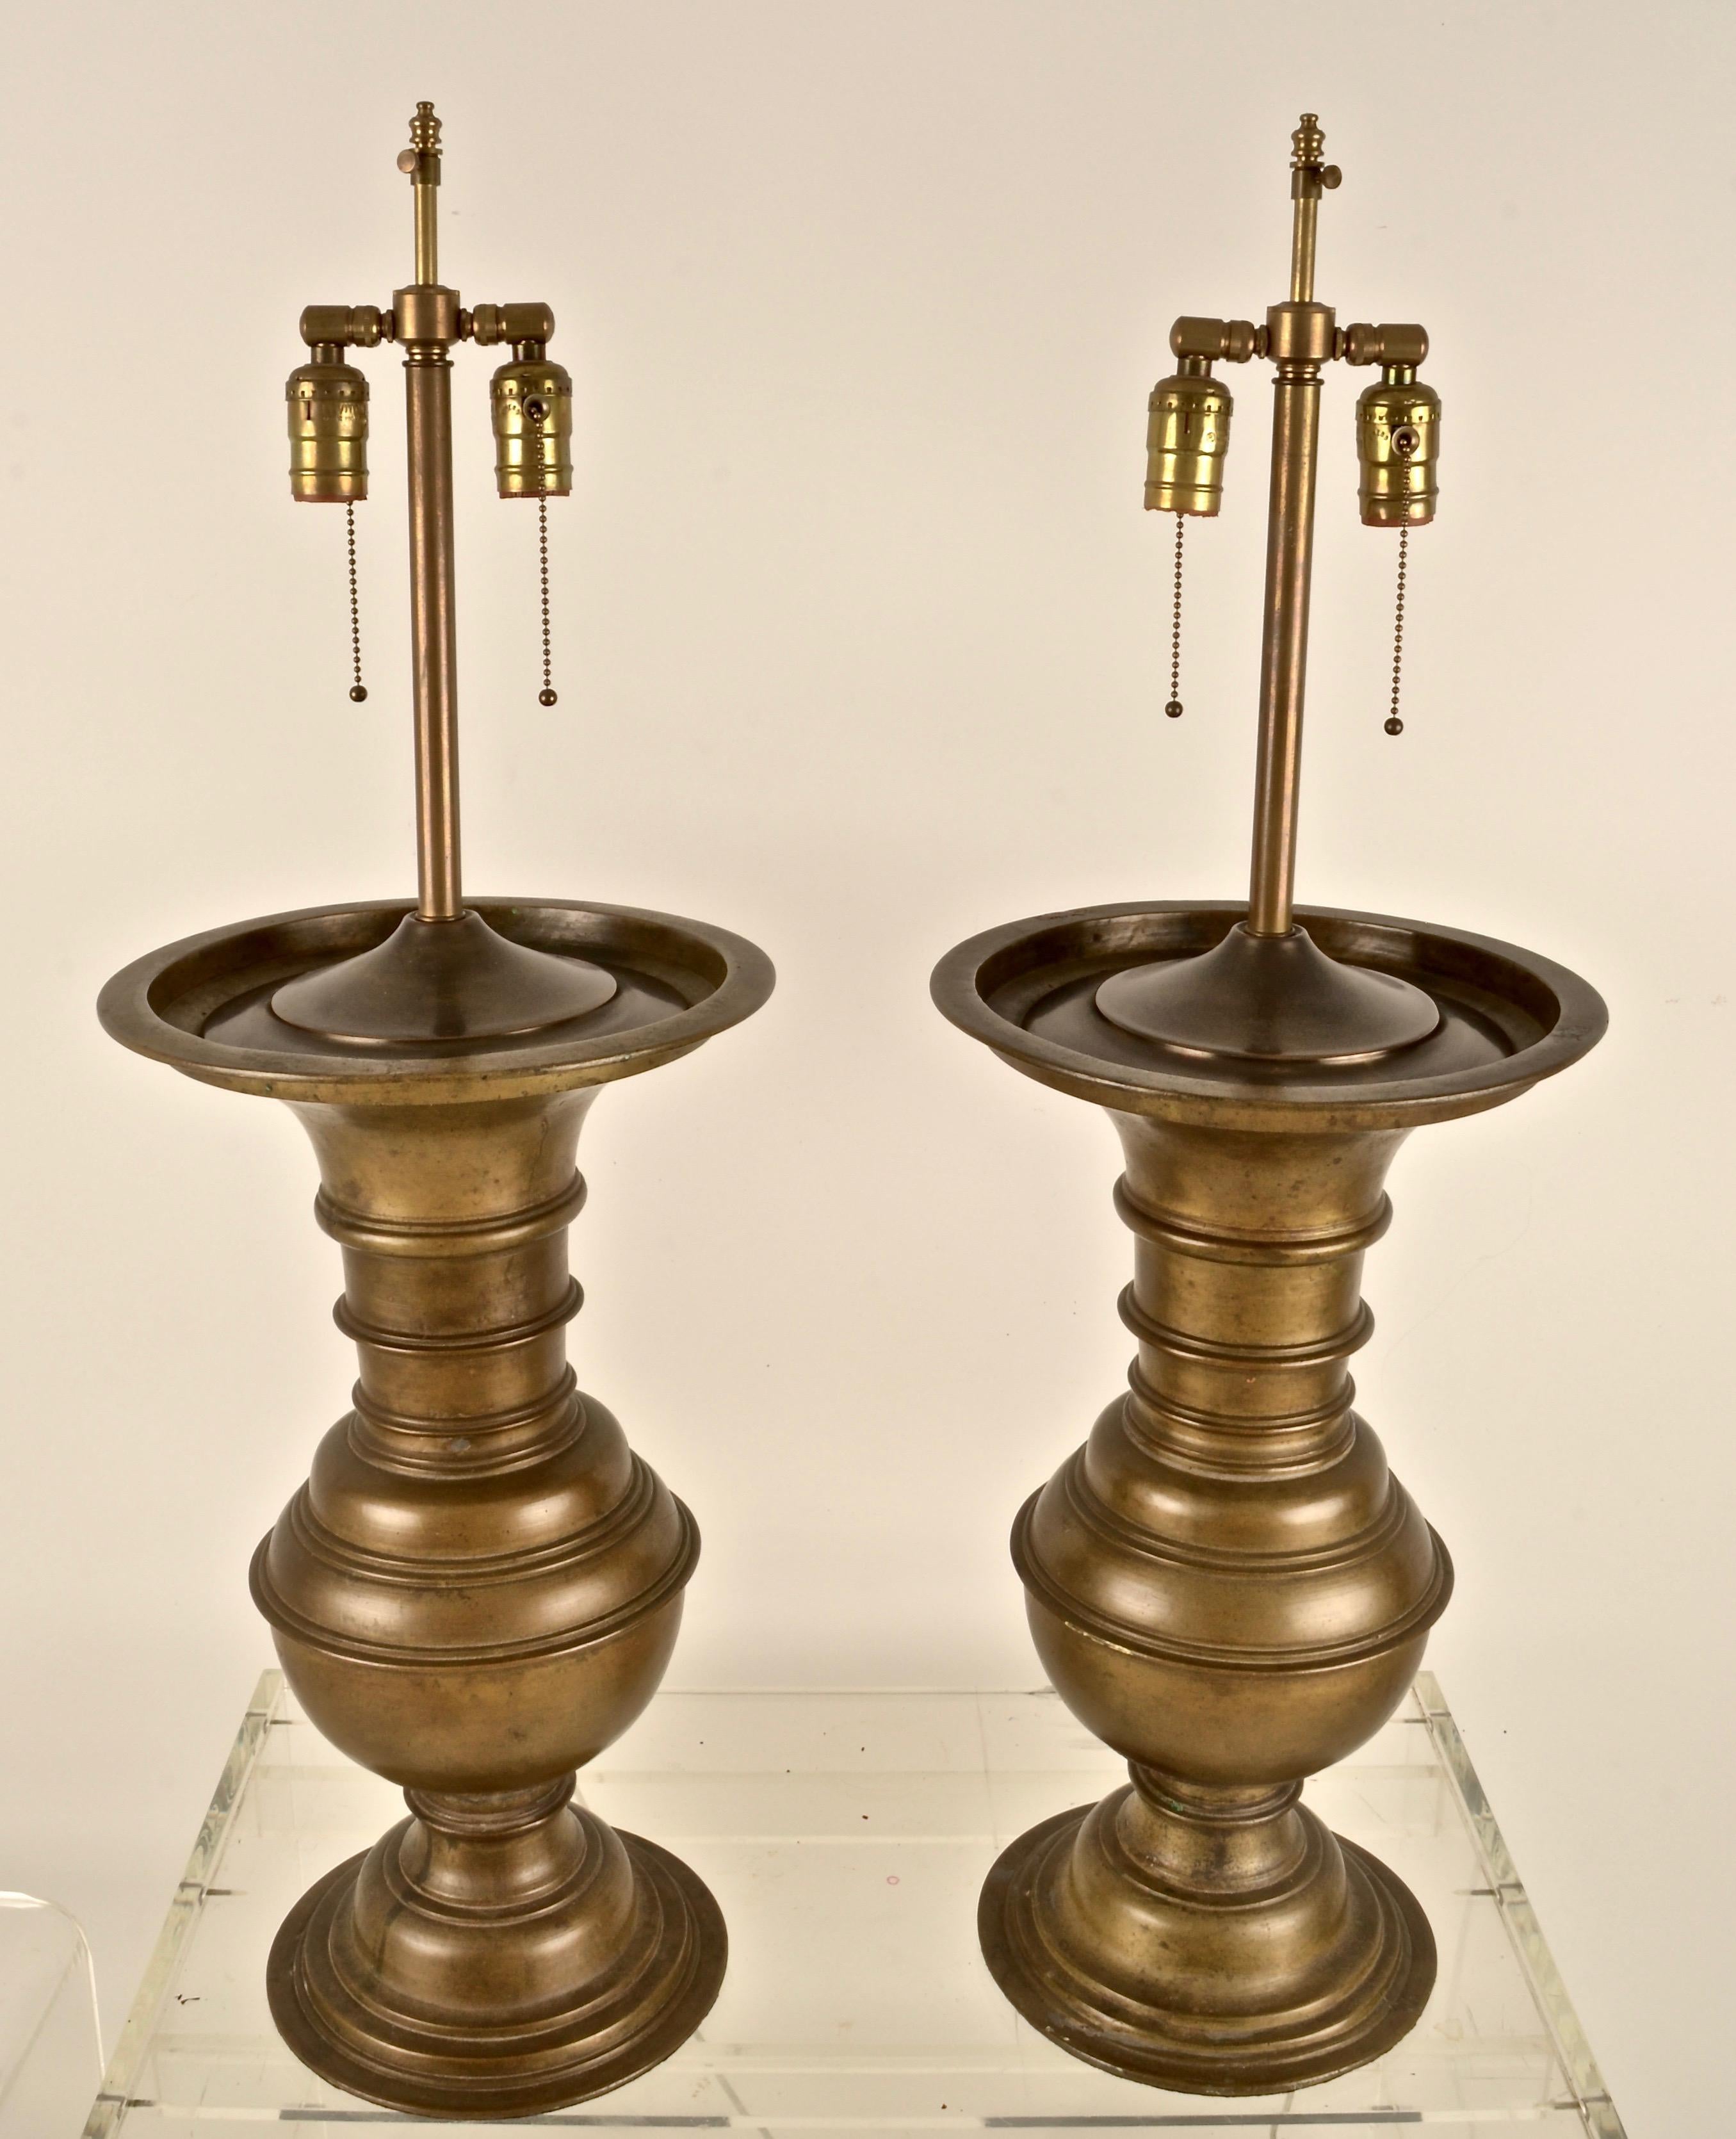 Die gegossene Bronze hat eine schöne antike Patina mit natürlicher Oxidation. Hochwertige Lampenumrüstung mit zwei Glühbirnen pro Lampe und verstellbarem Schirmstab. String Shades in sehr gutem Zustand enthalten. Lampen messen: 11,5